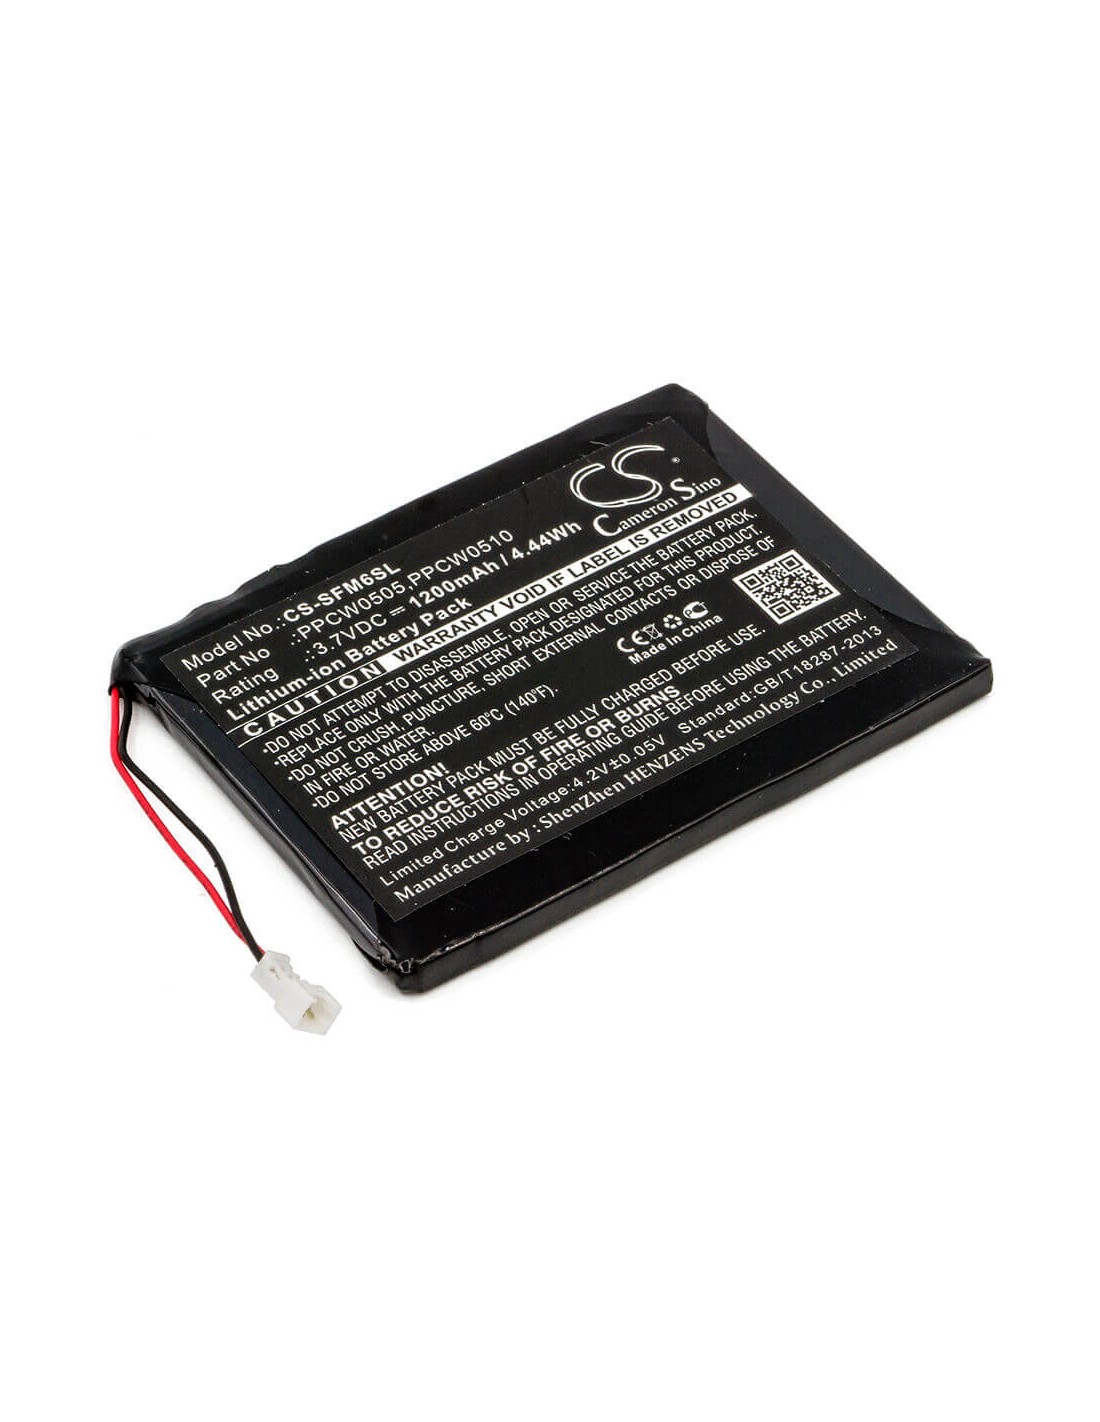 Battery for I-audio X5l 30gb 3.7V, 1200mAh - 4.44Wh